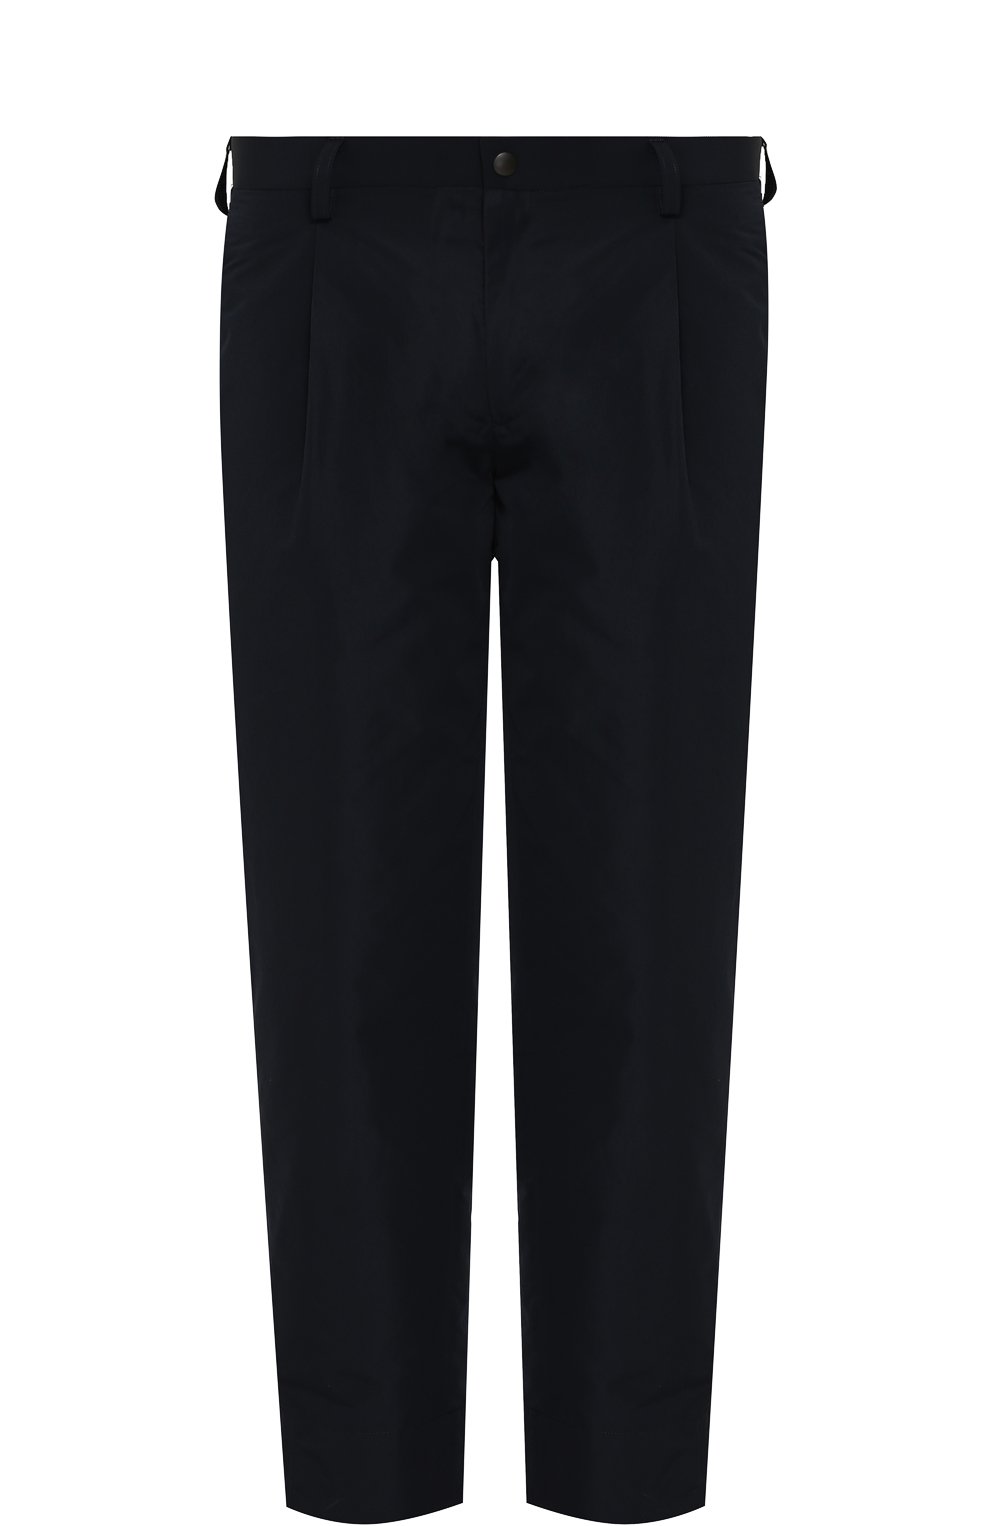 Мужские темно-синие укороченные брюки прямого кроя KOLOR купить винтернет-магазине ЦУМ, арт. 18SCM-P13107